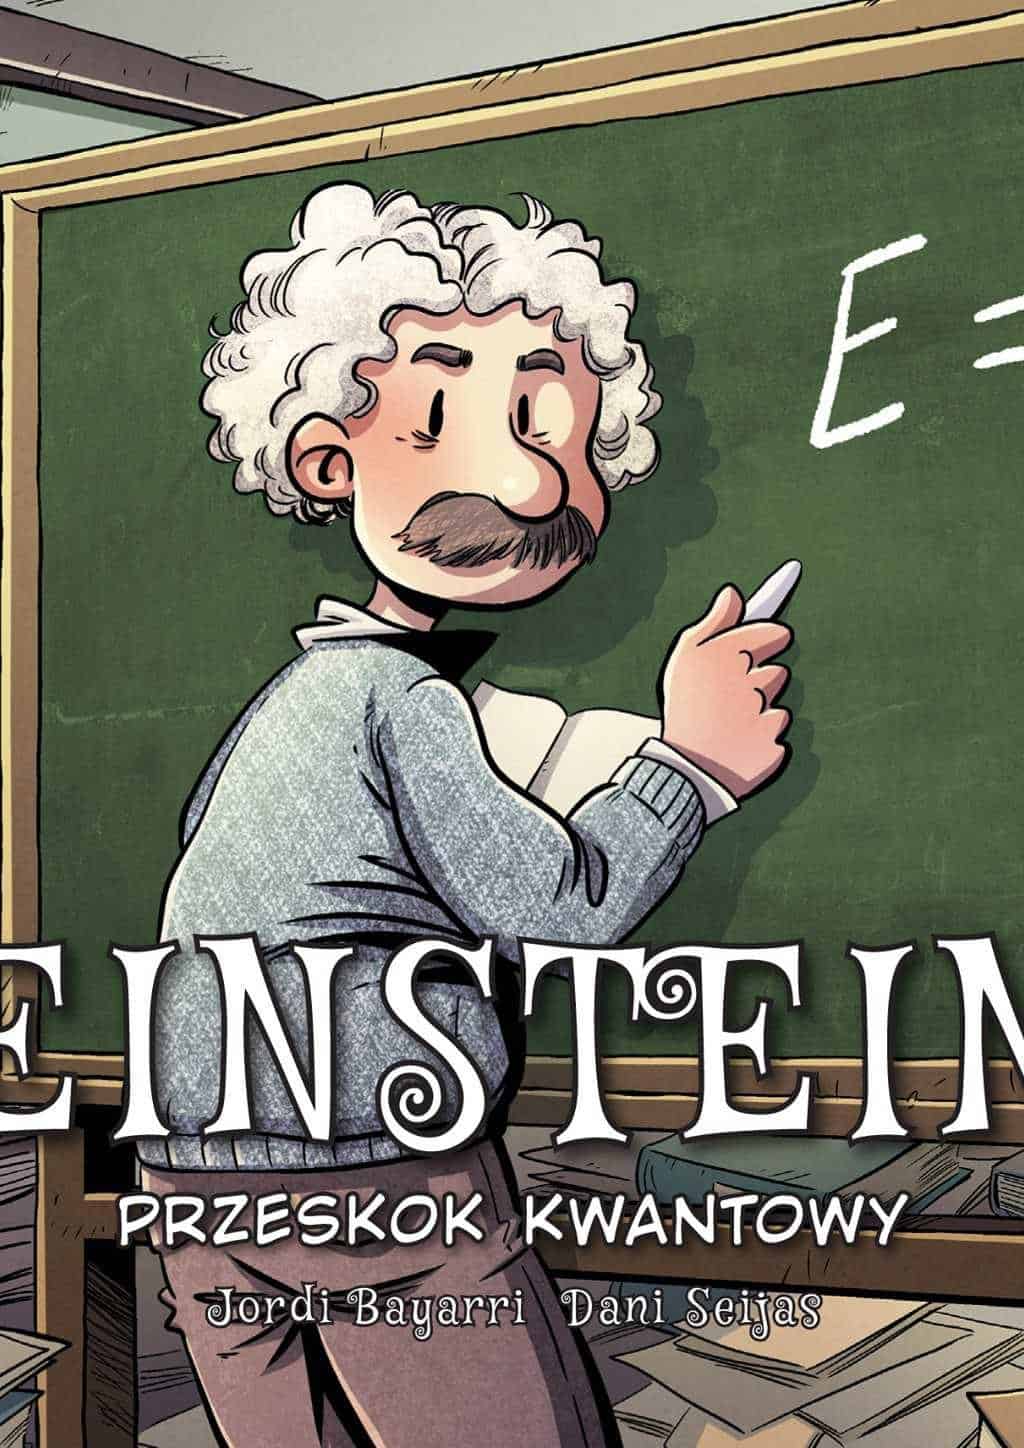 Einstein - komiks - Egmont Polska